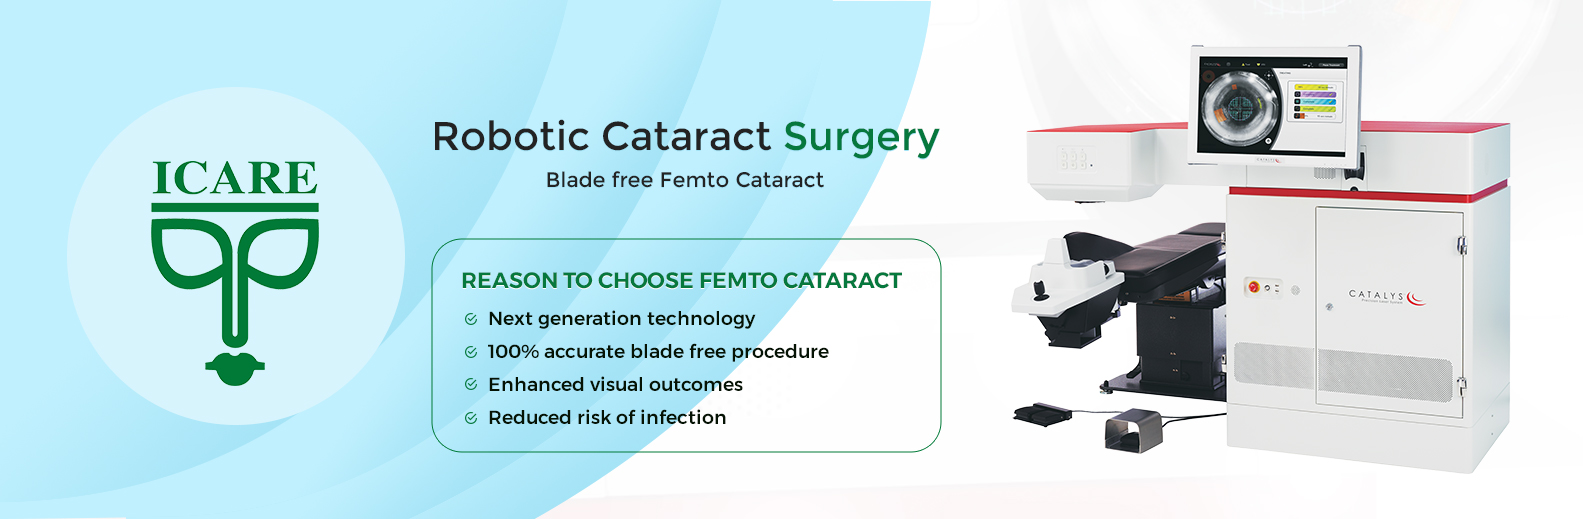 Robotic cataract surgery